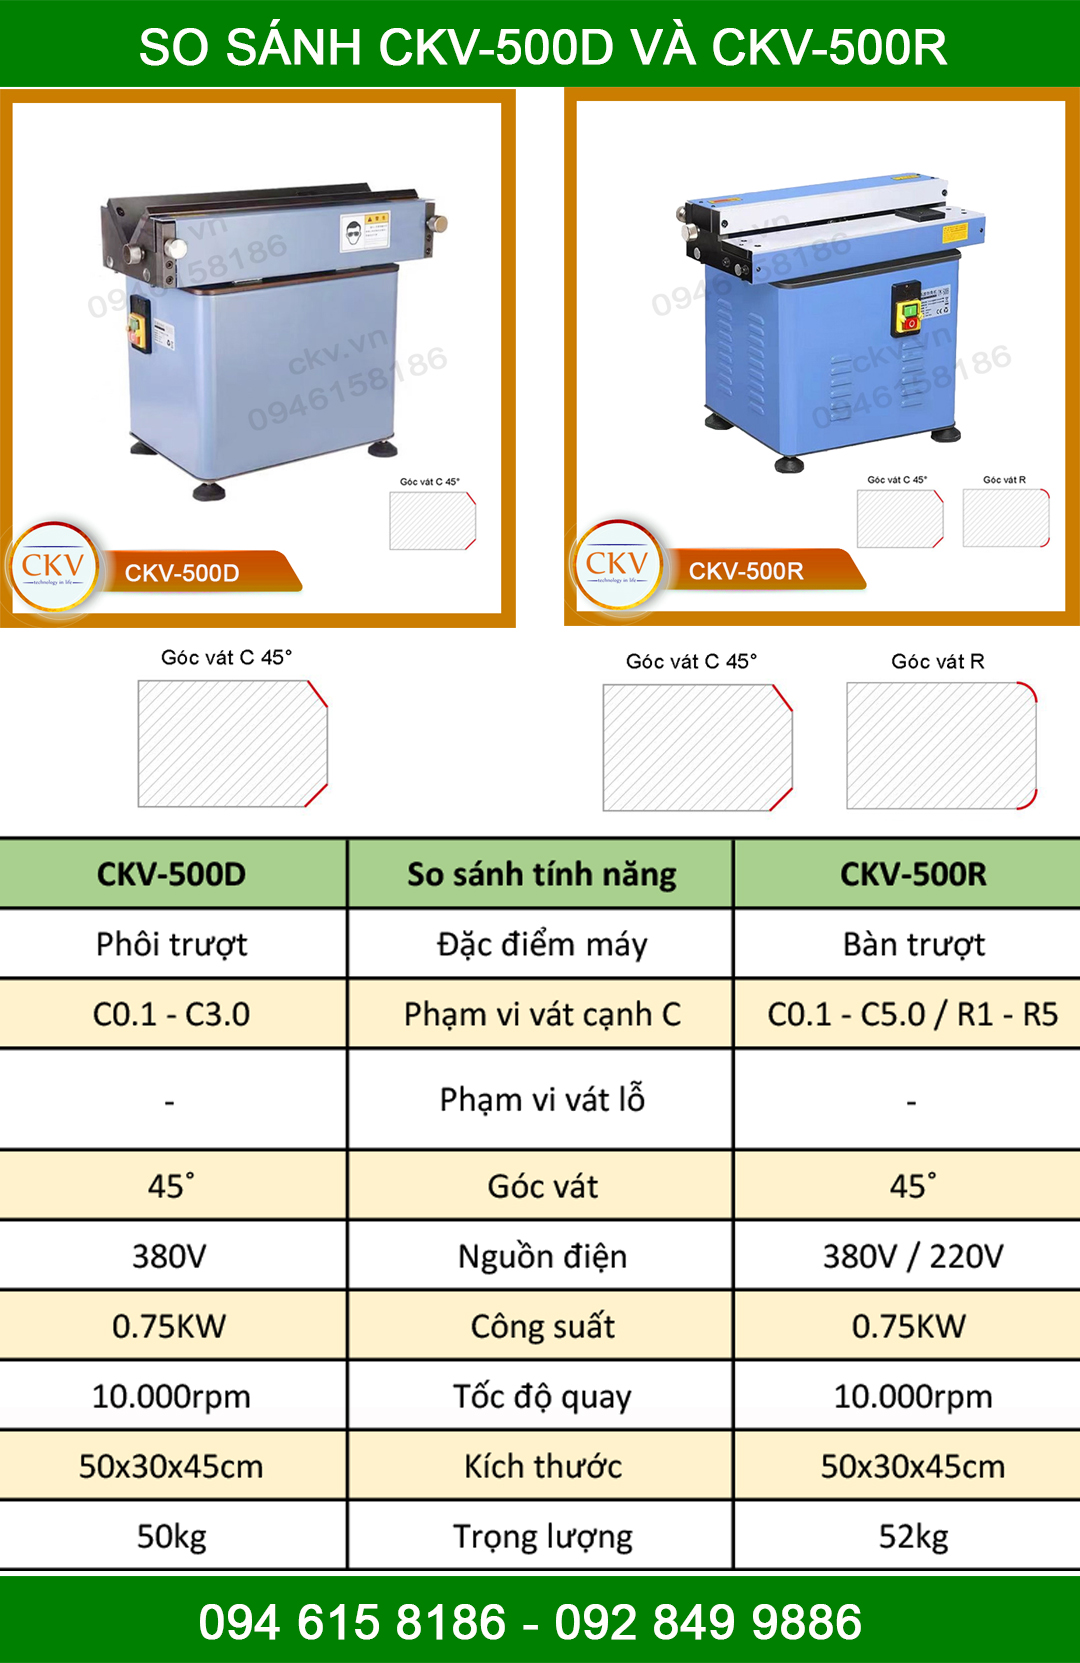 So sánh CKV-500D và CKV-500R